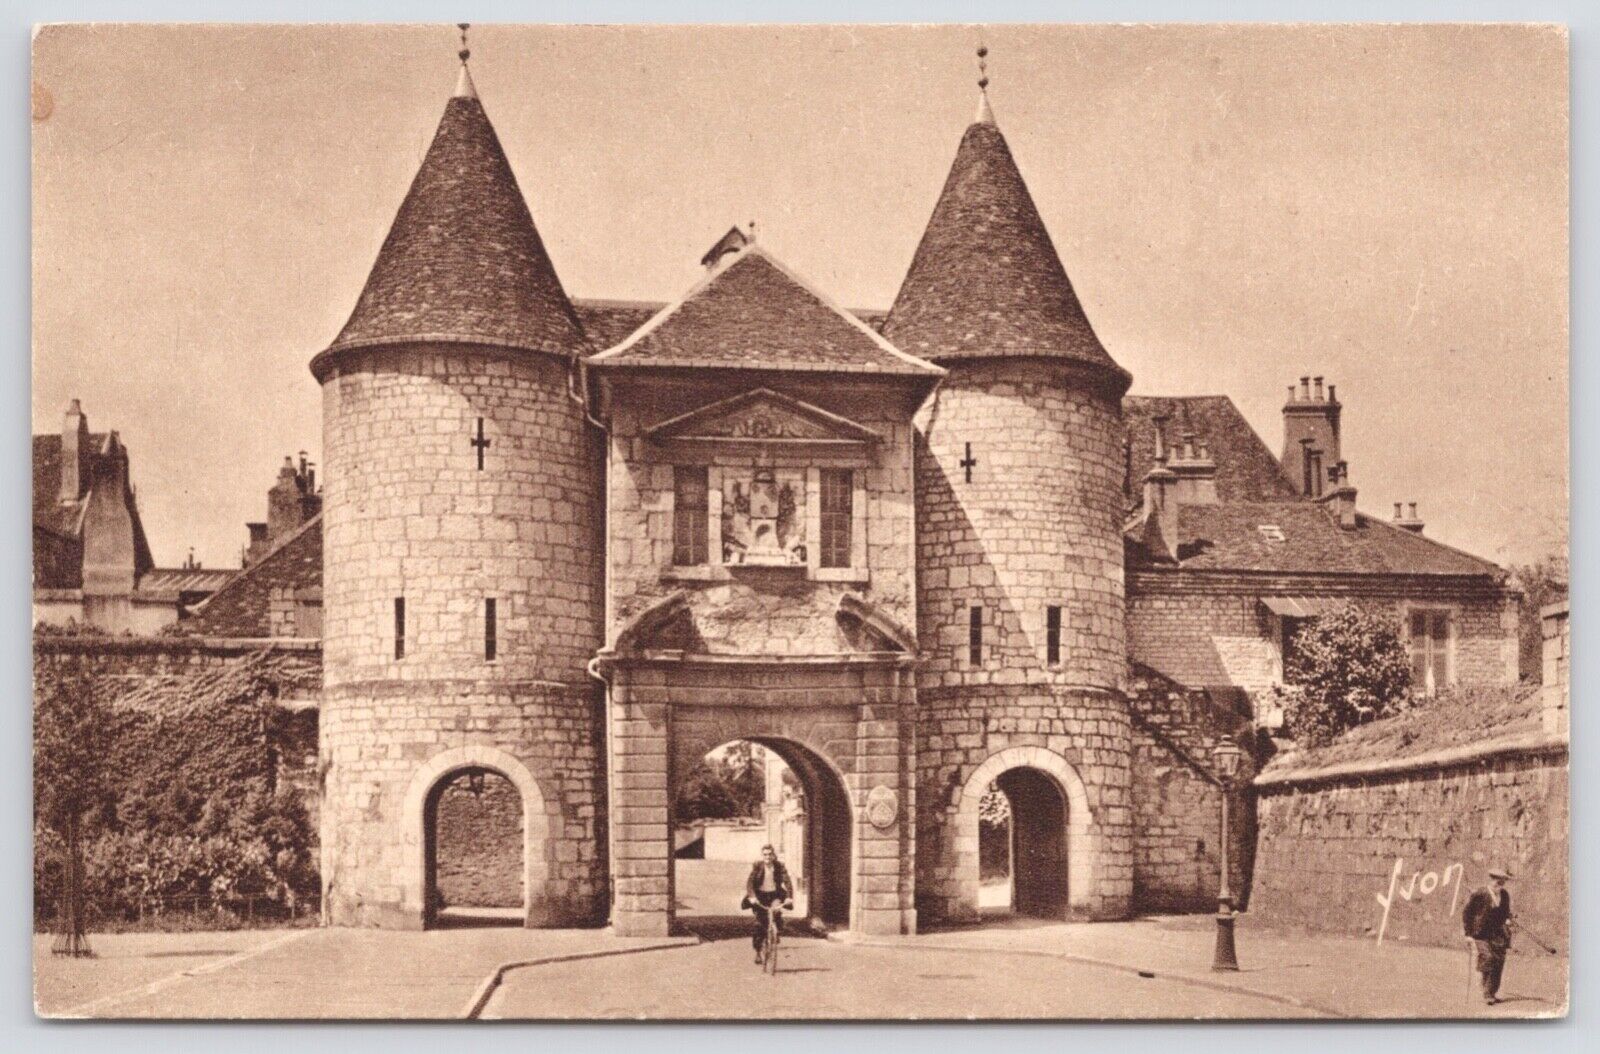 Postcard The Rivotte Gate Built in 1546 Besançon France c1940s-50s